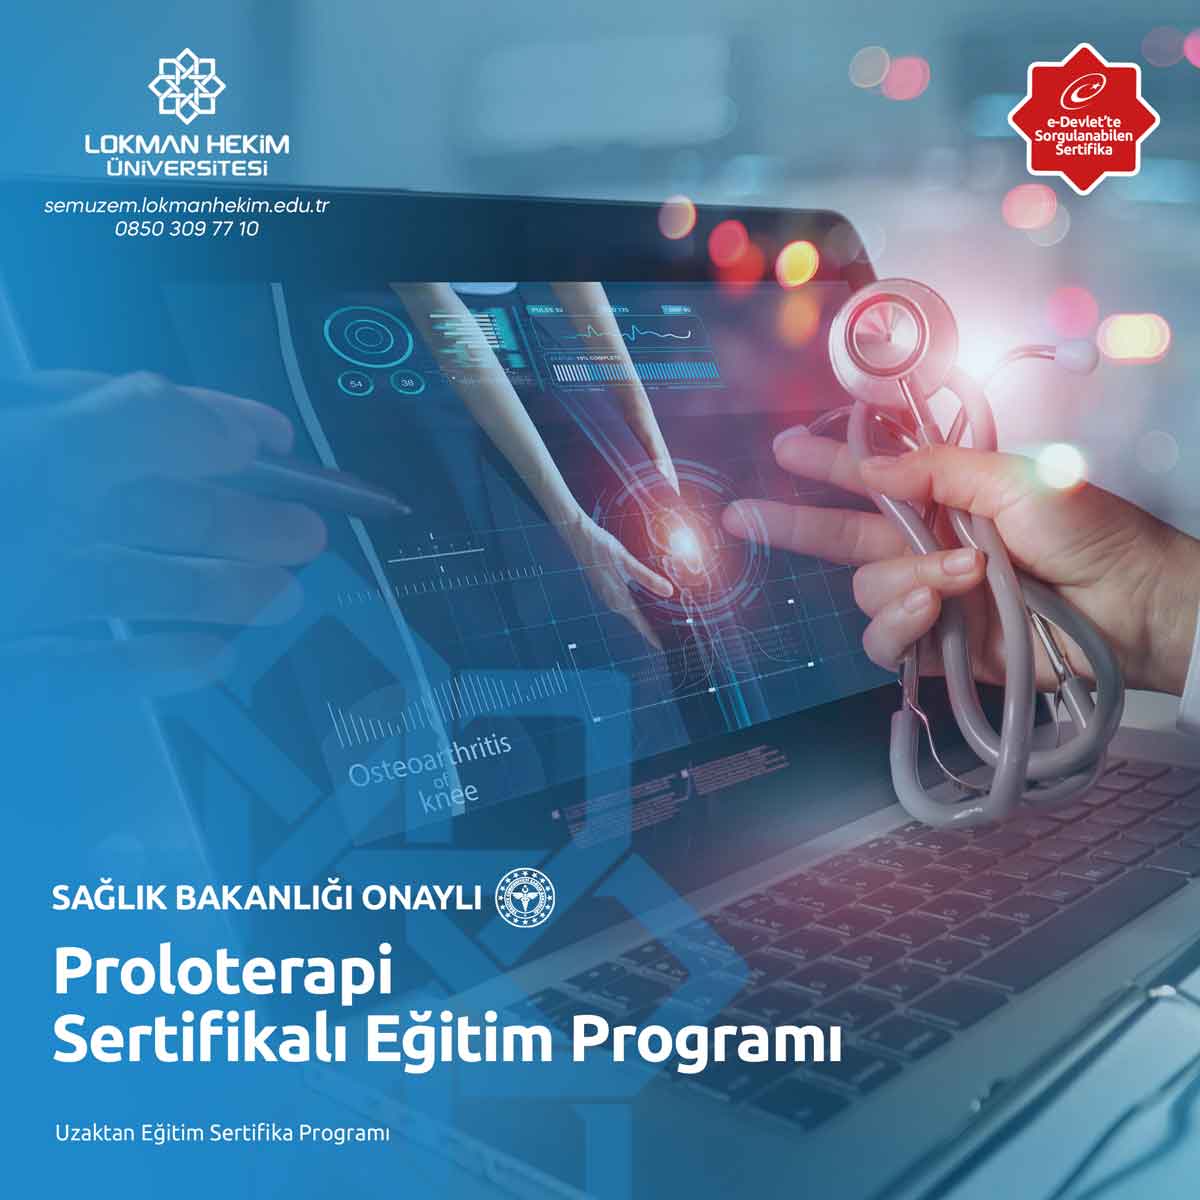 Proloterapi Sertifikalı Eğitim Programı